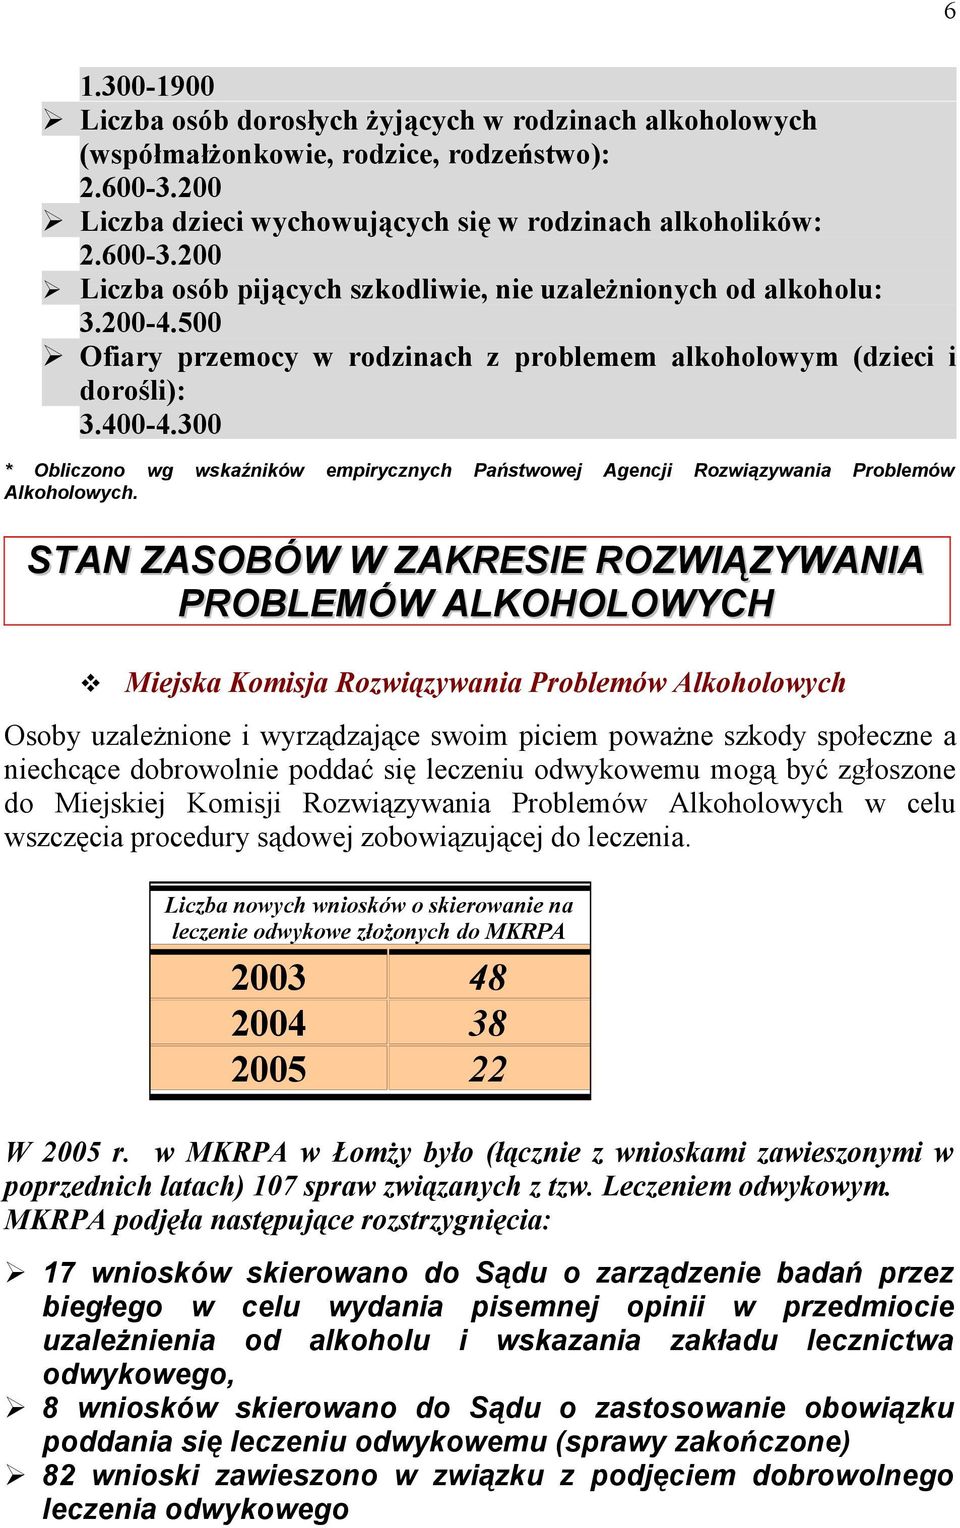 STAN ZASOBÓW W ZAKRESIE ROZWIĄZYWANIA PROBLEMÓW ALKOHOLOWYCH Miejska Komisja Rozwiązywania Problemów Alkoholowych Osoby uzależnione i wyrządzające swoim piciem poważne szkody społeczne a niechcące